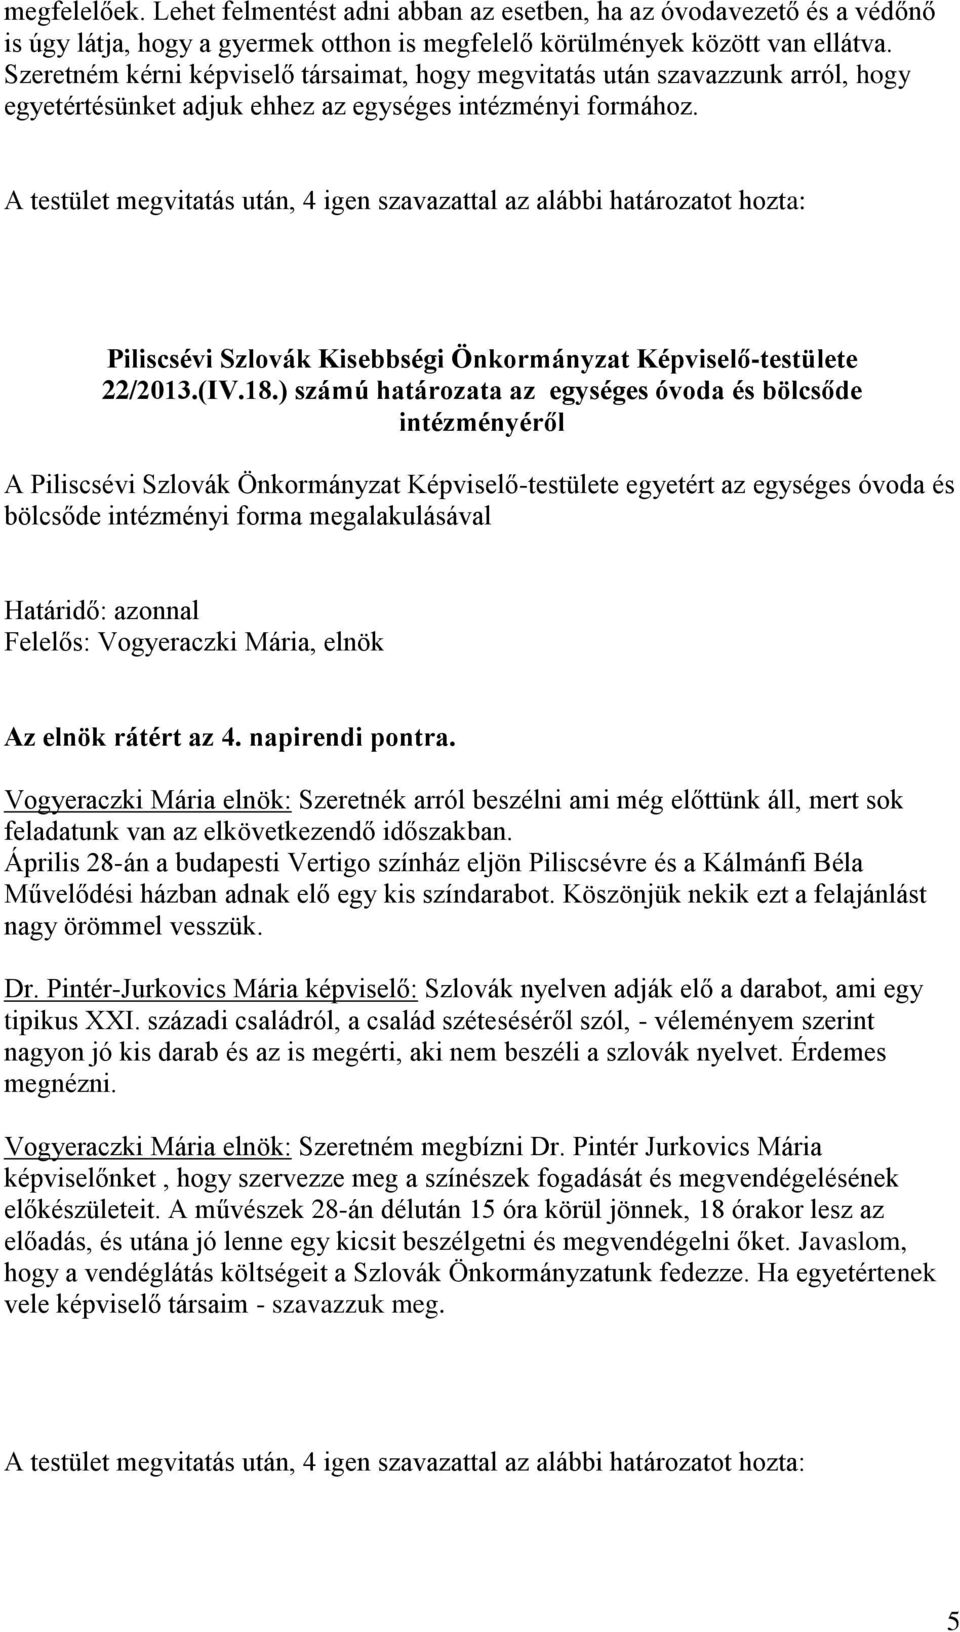 Piliscsévi Szlovák Kisebbségi Önkormányzat Képviselő-testülete 22/2013.(IV.18.